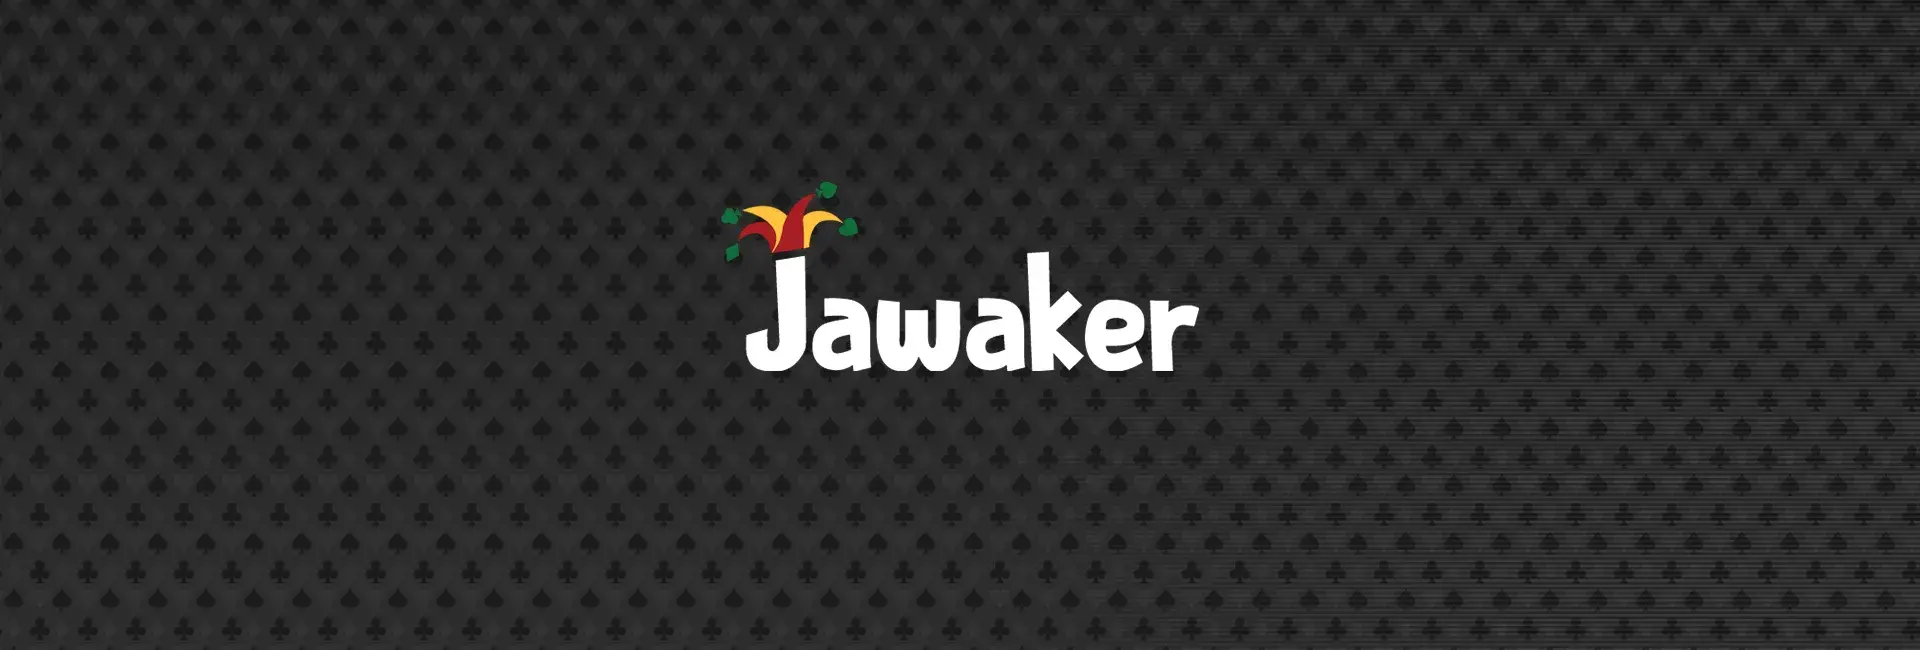 Jawaker Codes